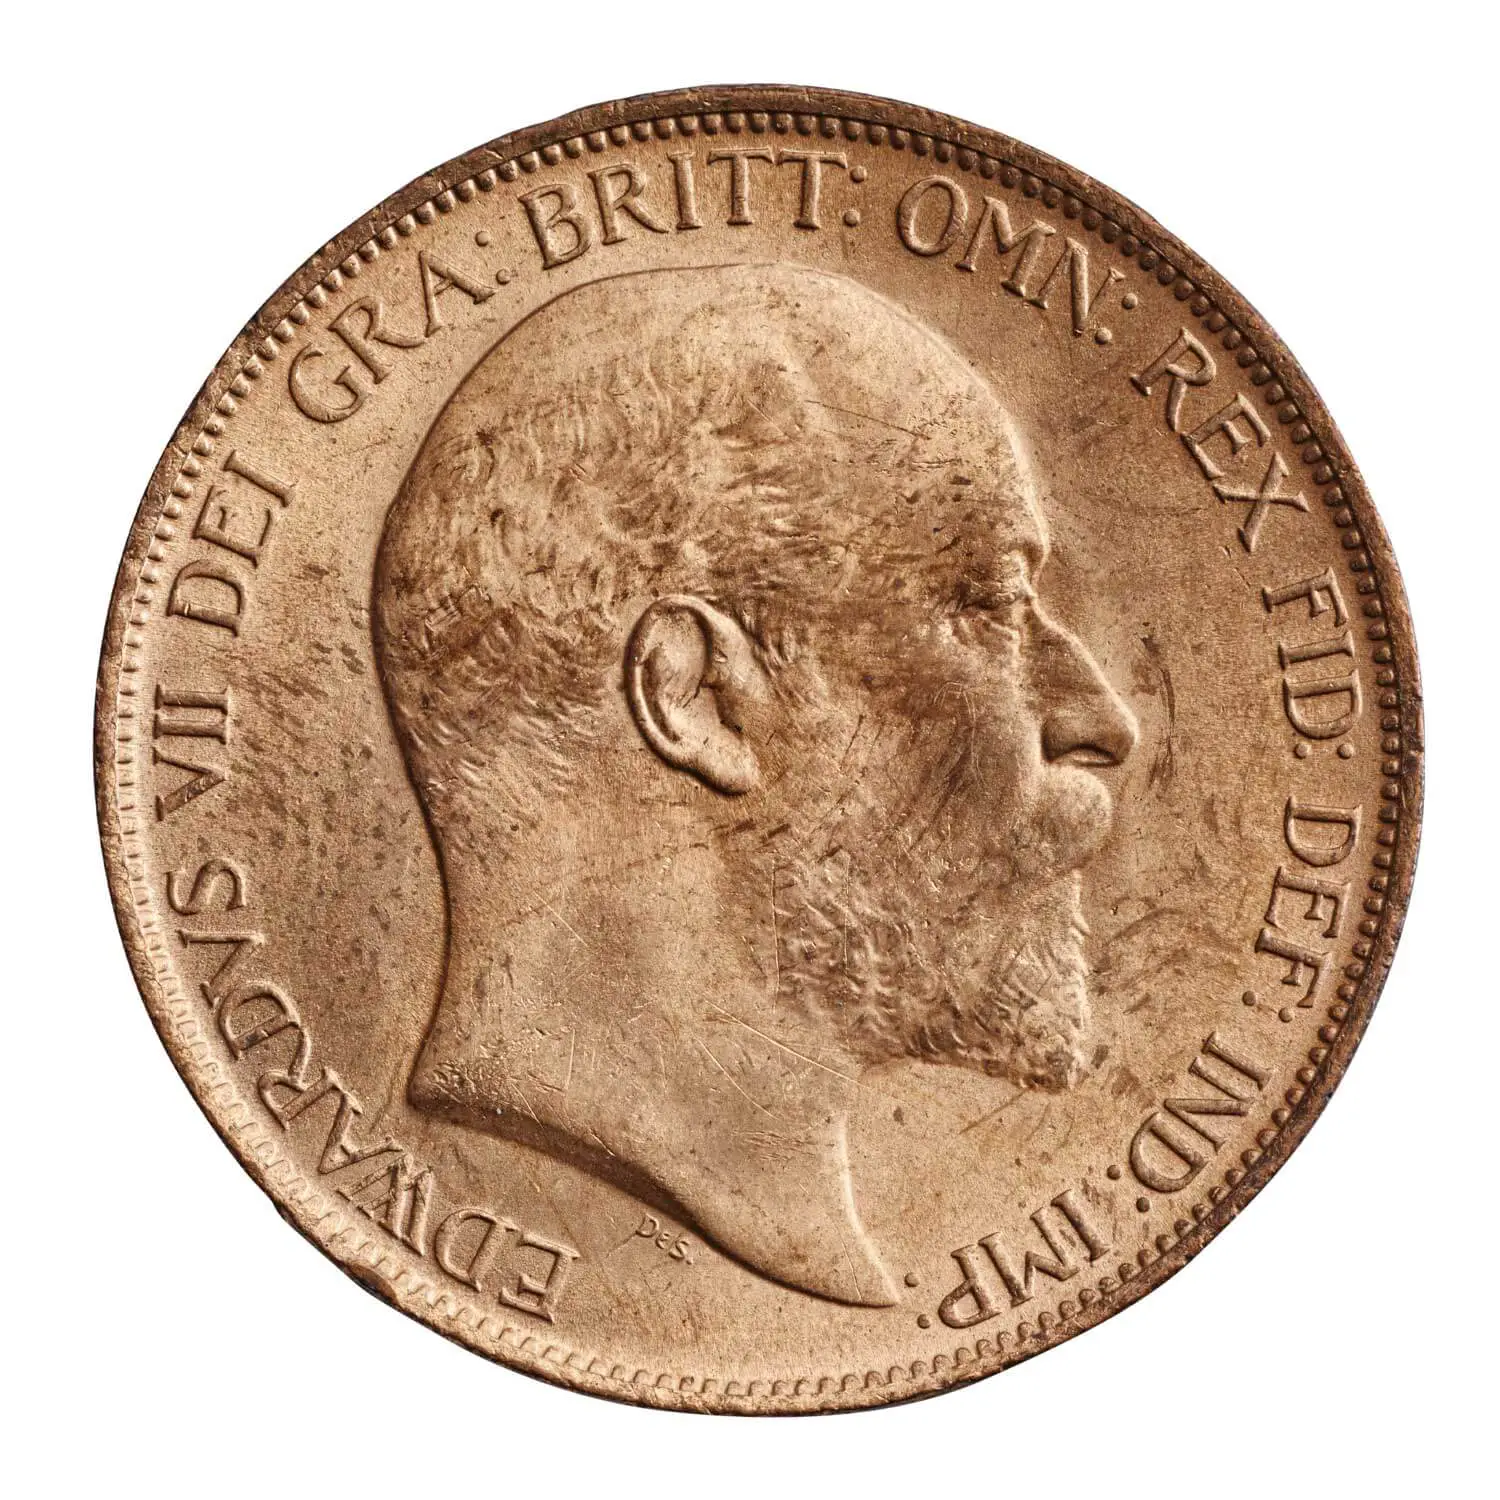 1902 Edward VII Penny obverse